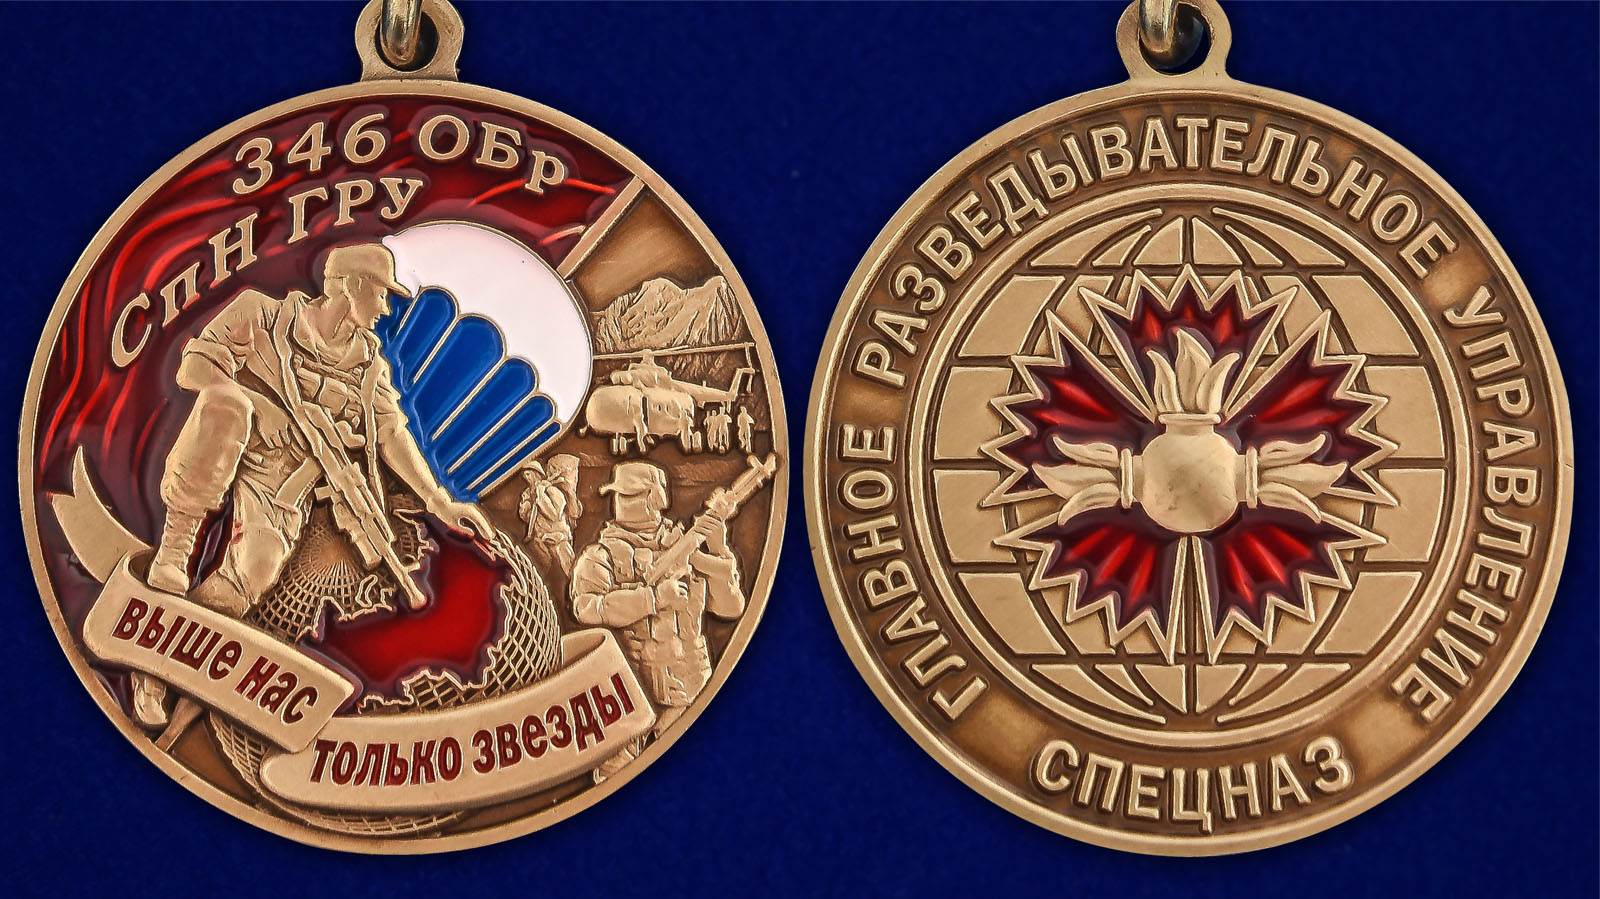 Описание медали "346 ОБрСпН ГРУ" - аверс и реверс